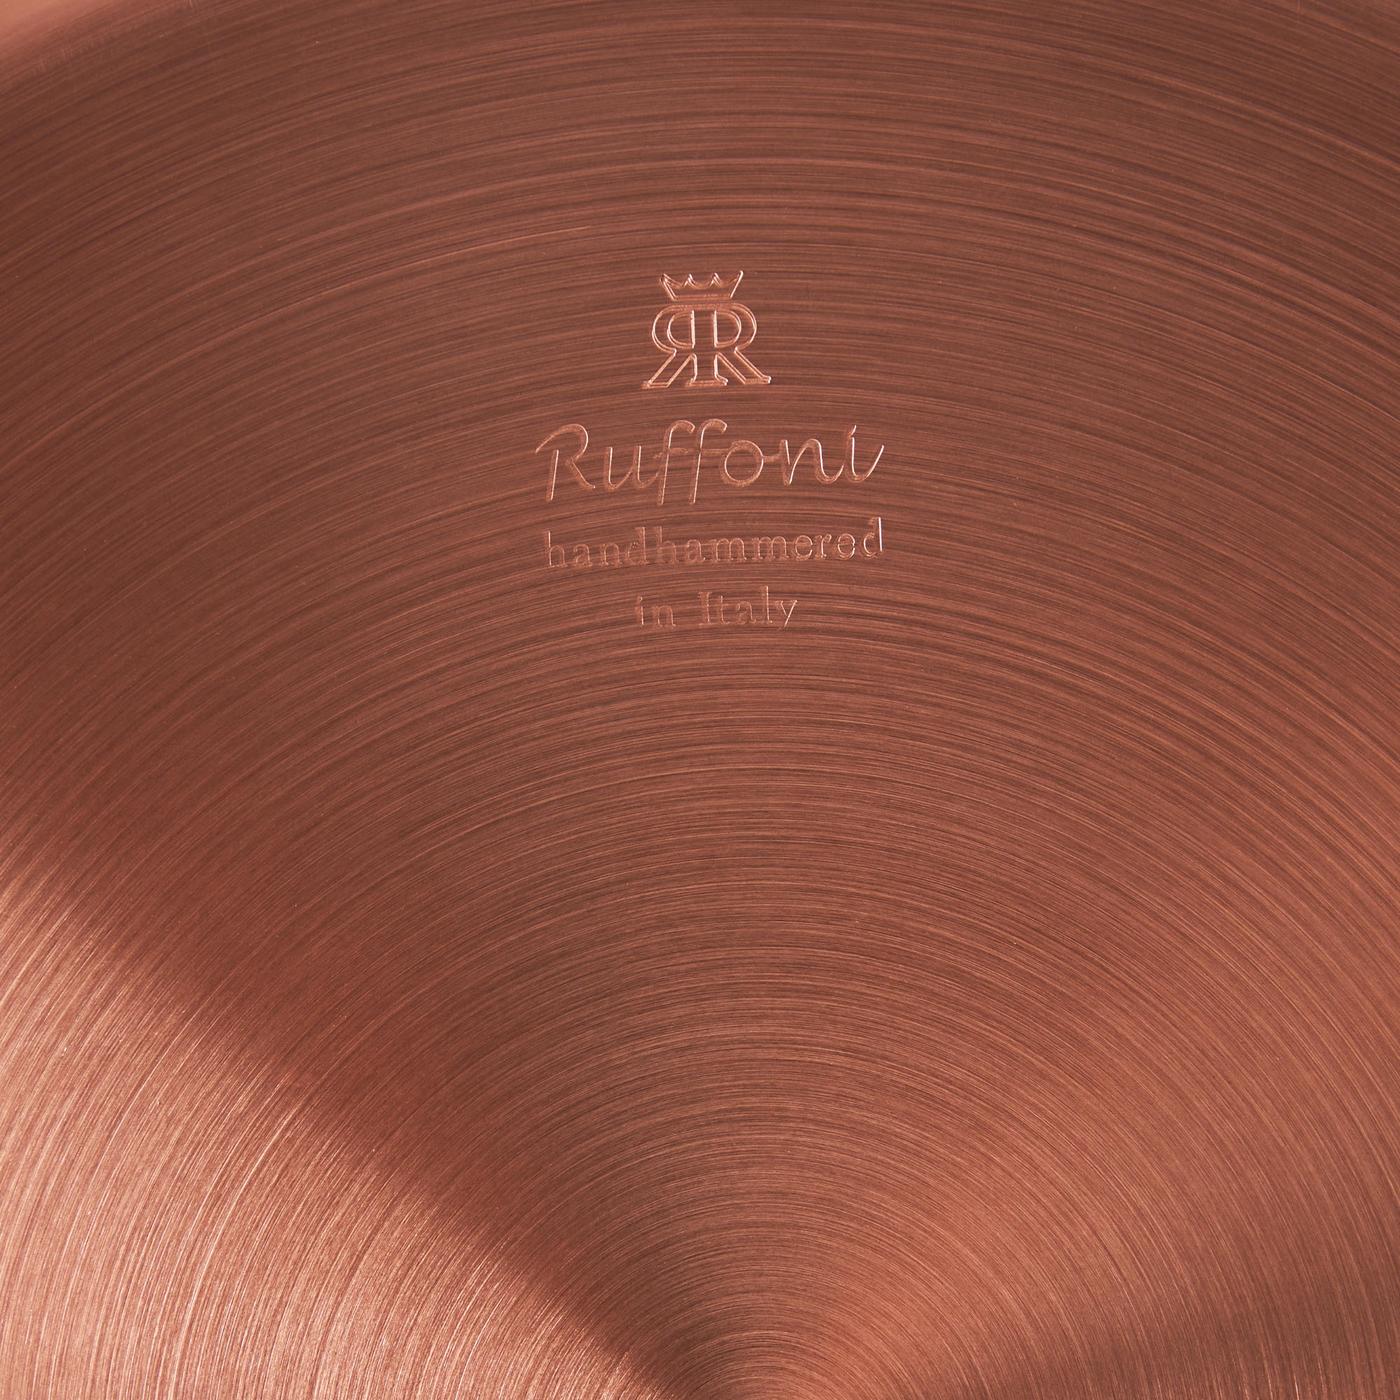 Ruffoni Symphonia Cupra Copper Stockpot, 8 qt.-5